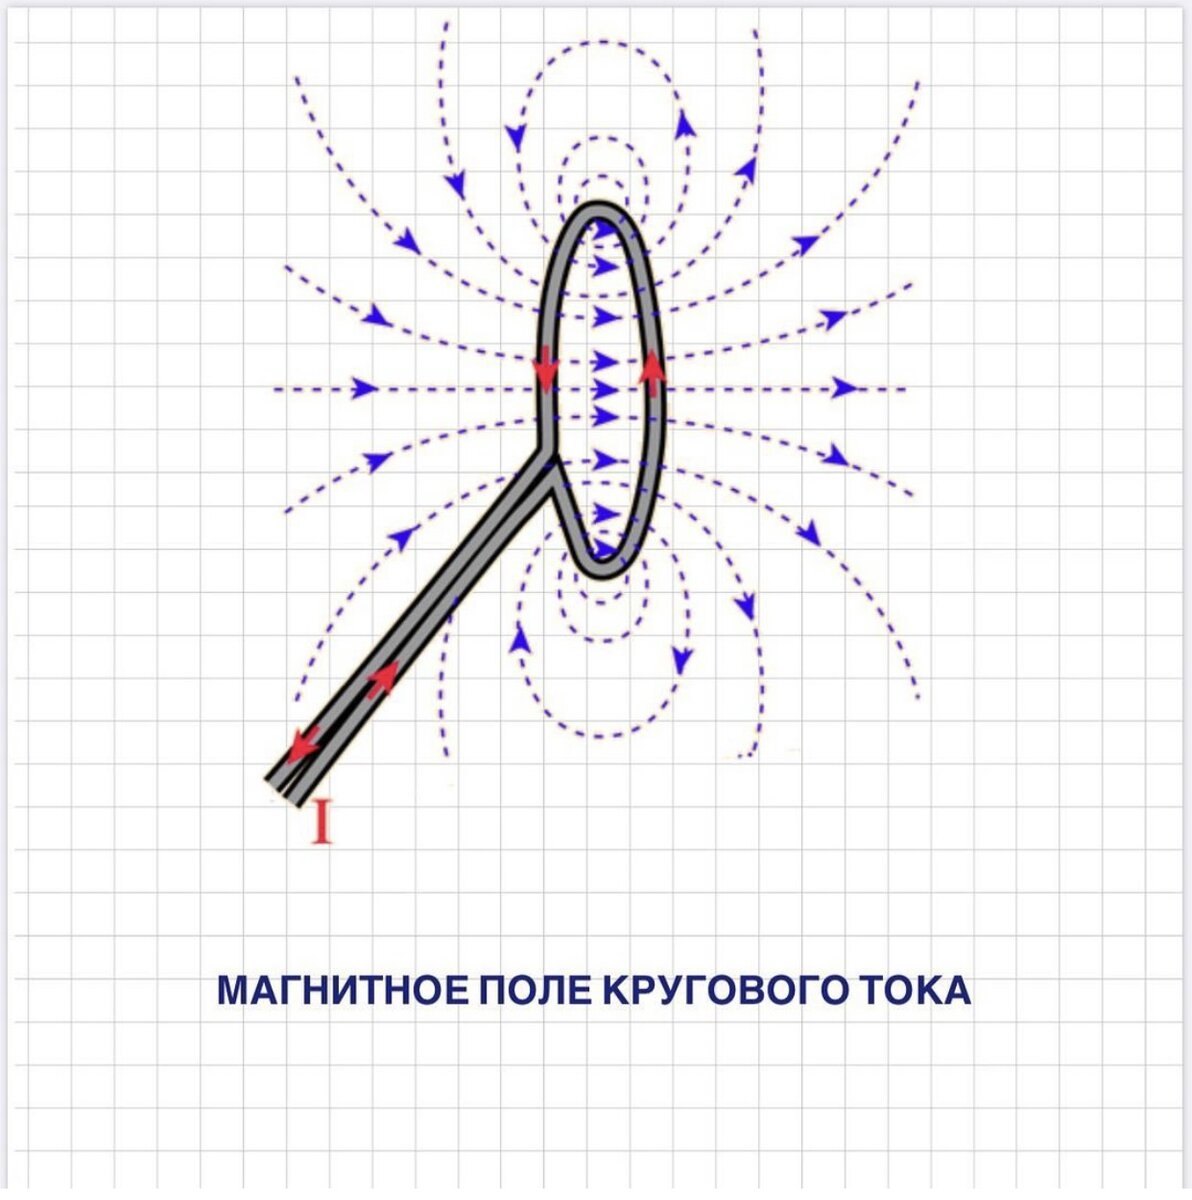 Изобразите магнитное поле прямого проводника с током